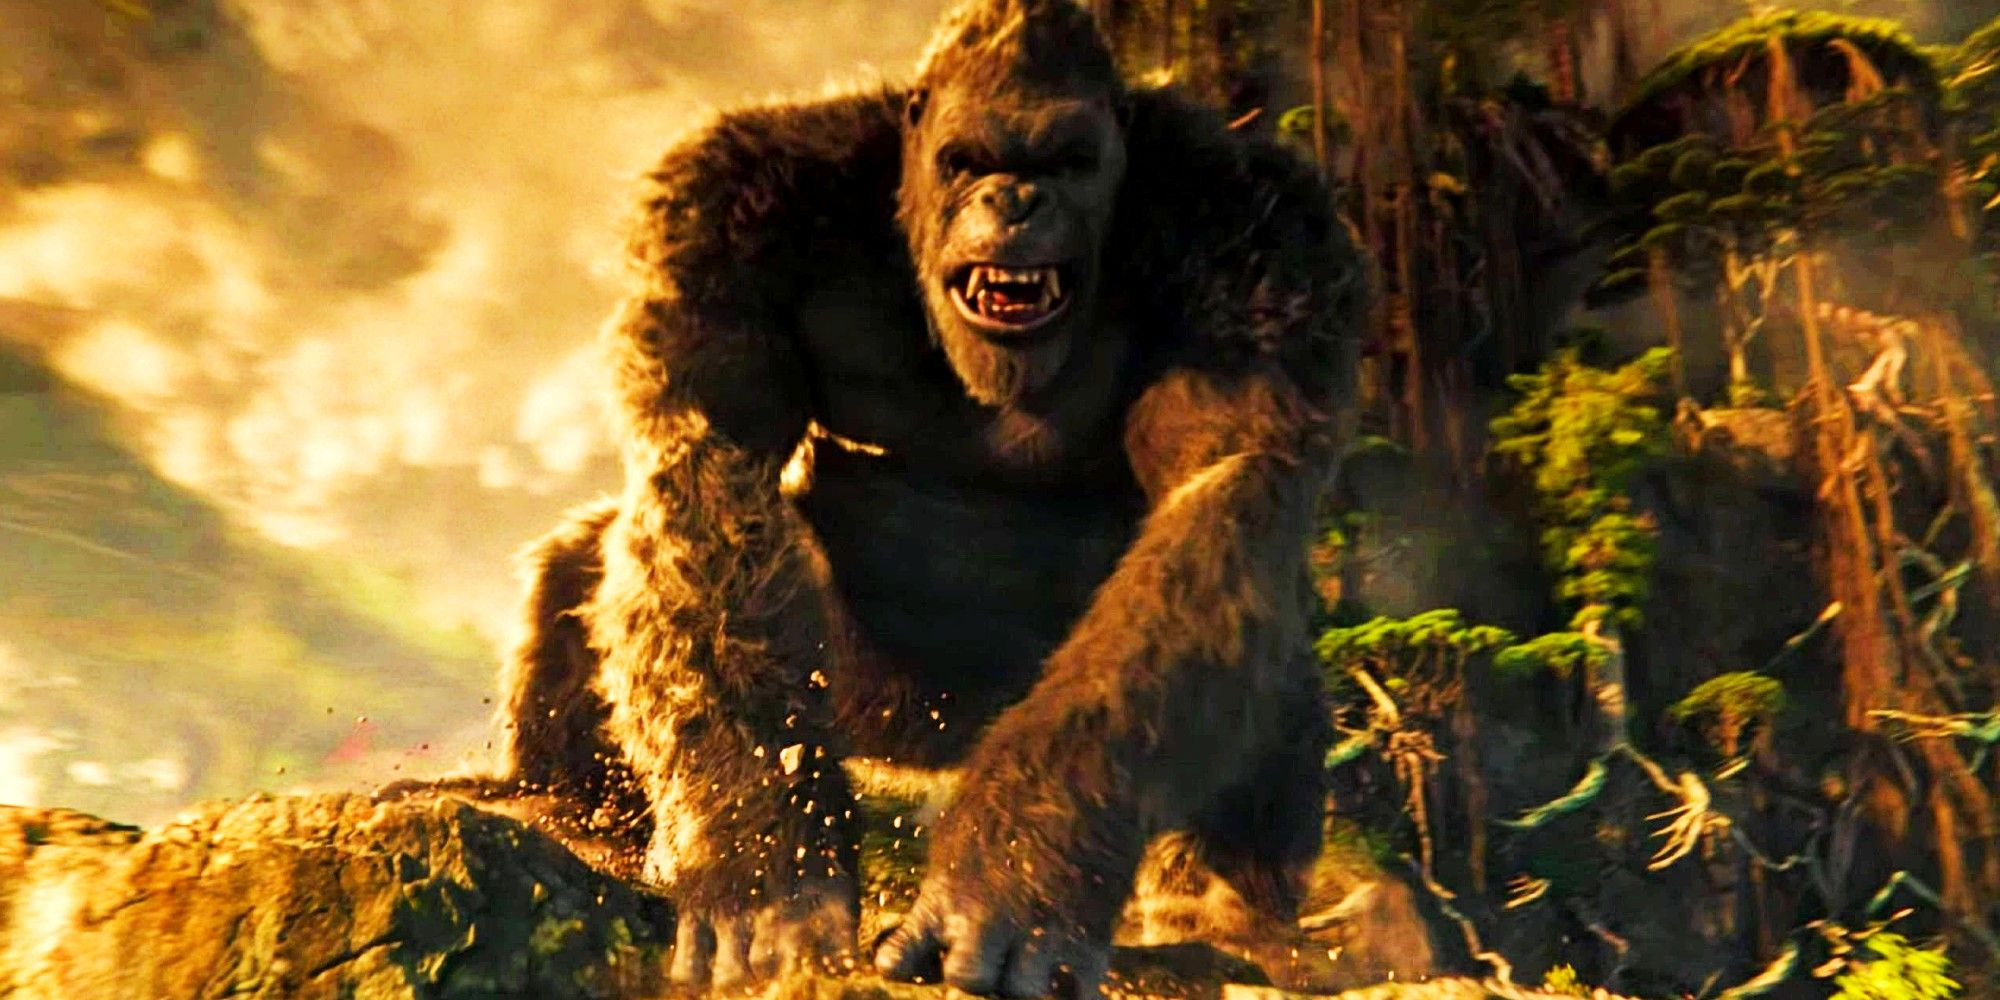 Kong in Godzilla vs Kong